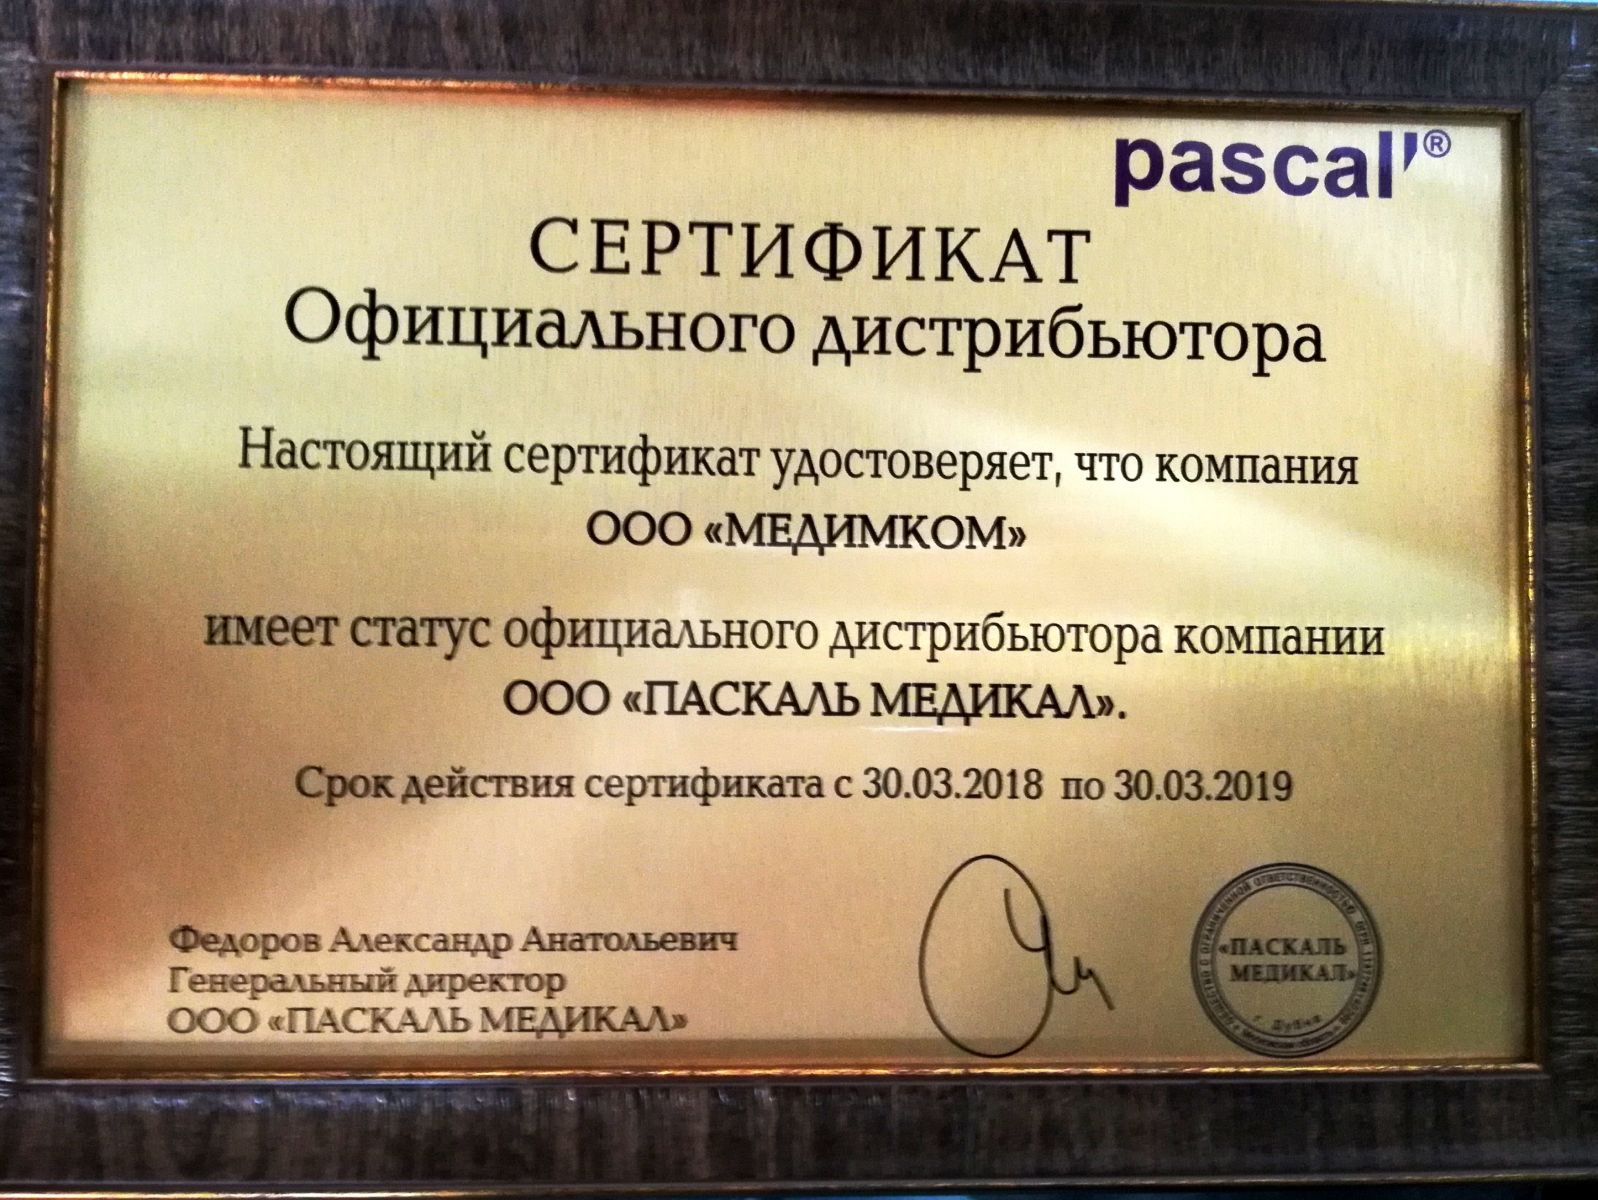 Сертификат официального дистрибьютора Паскаль Медикал от Медимкол